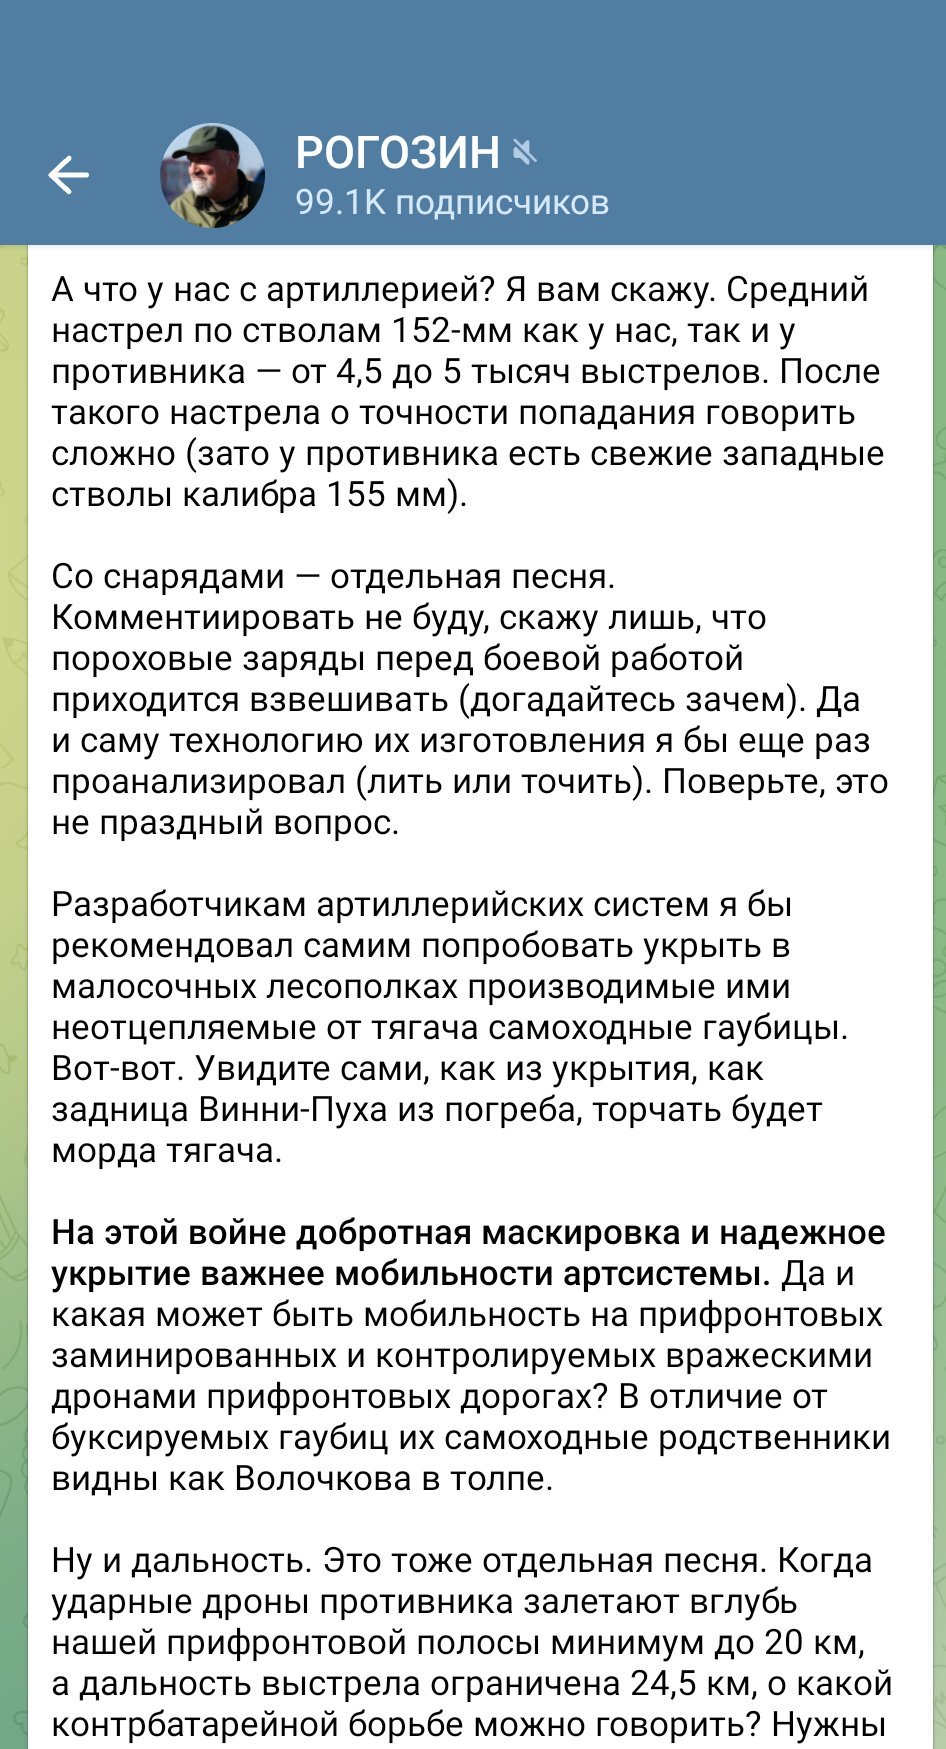 "Что у нас с артиллерией? Я вам скажу", – Рогозин "обрадовал" россиян новостью с фронта